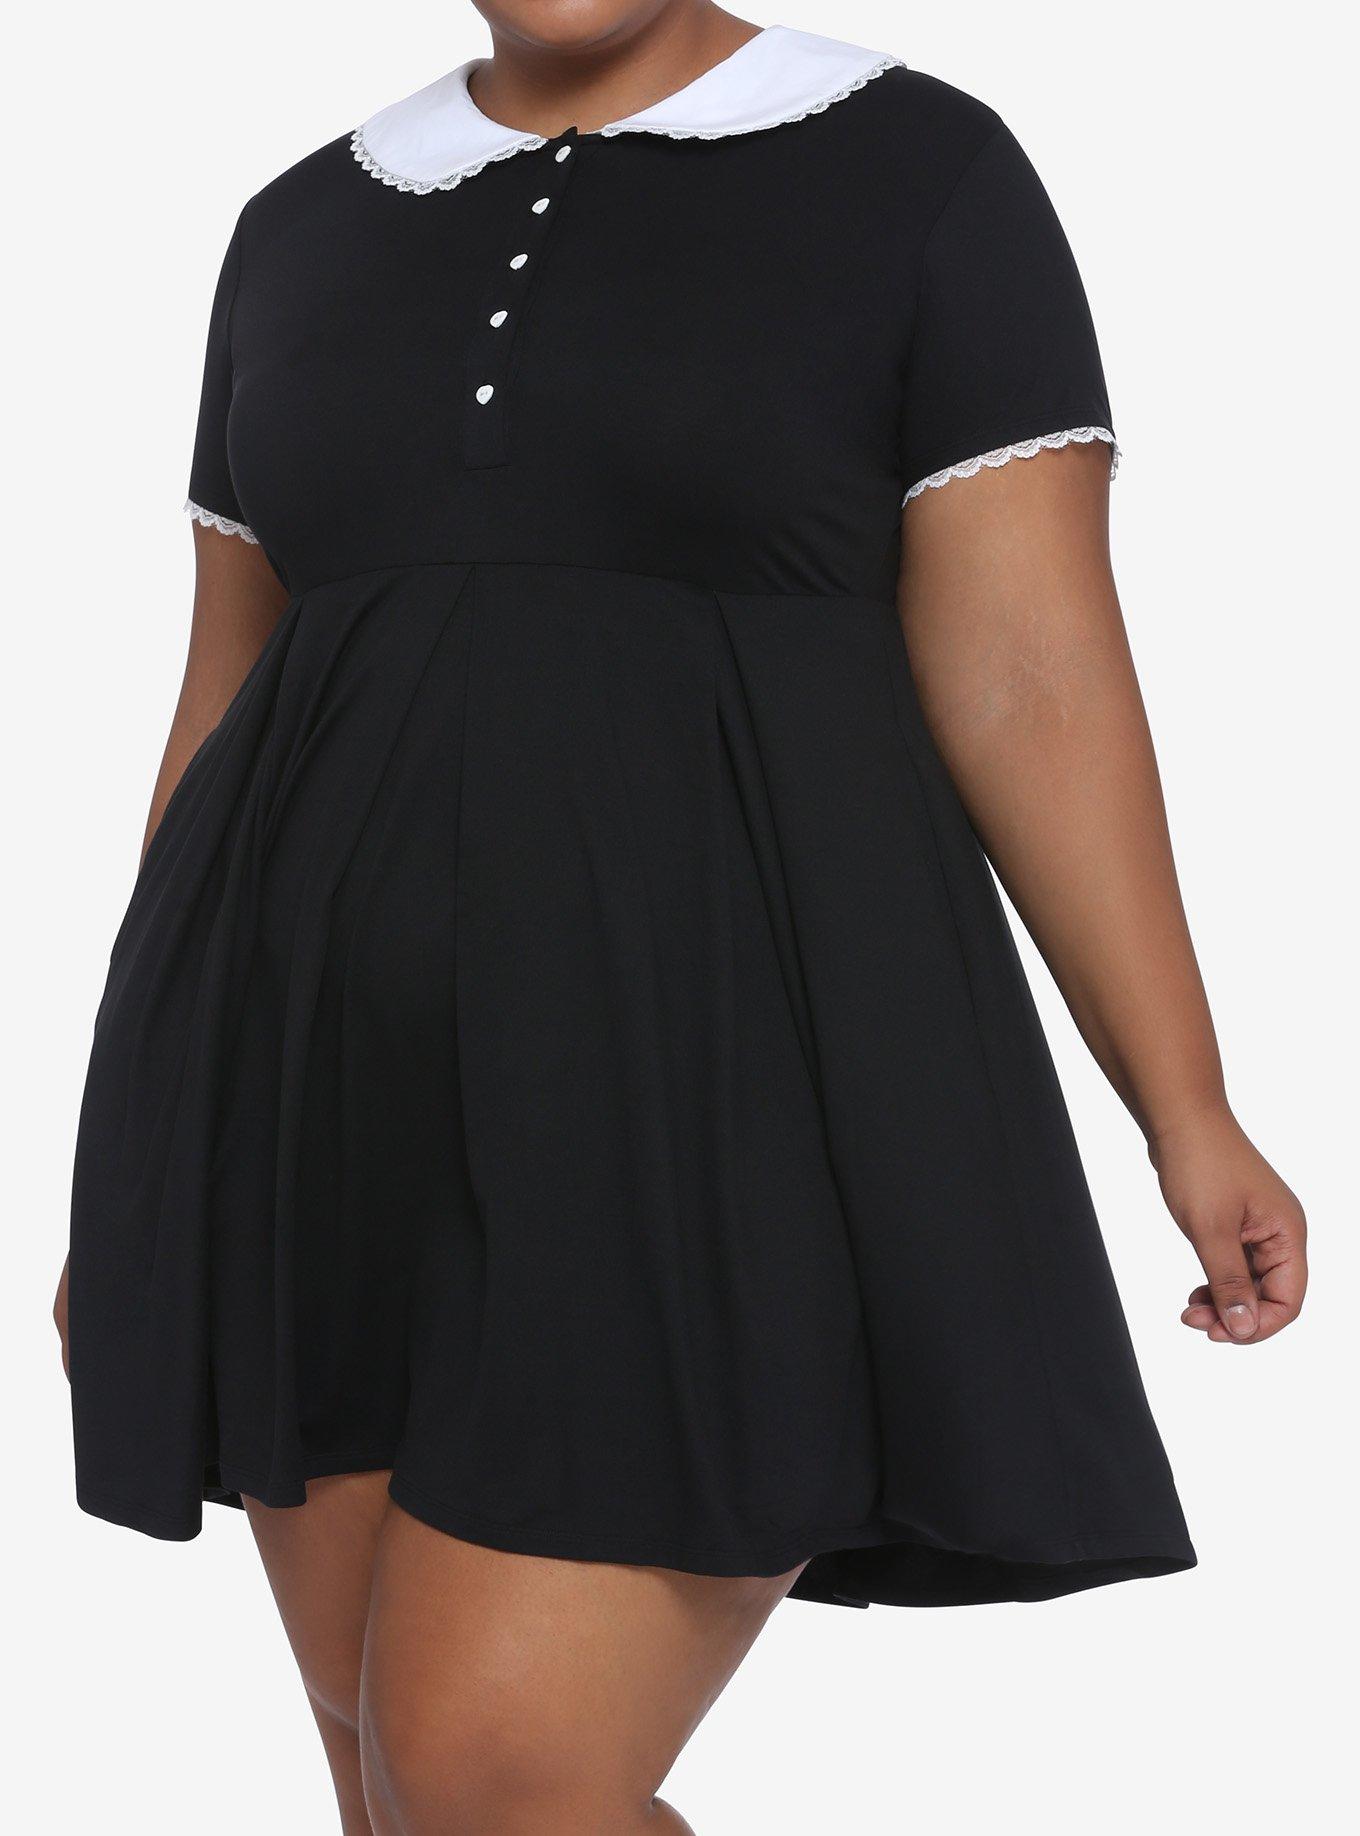 Lace Collar Black Dress Plus Size, BLACK, hi-res